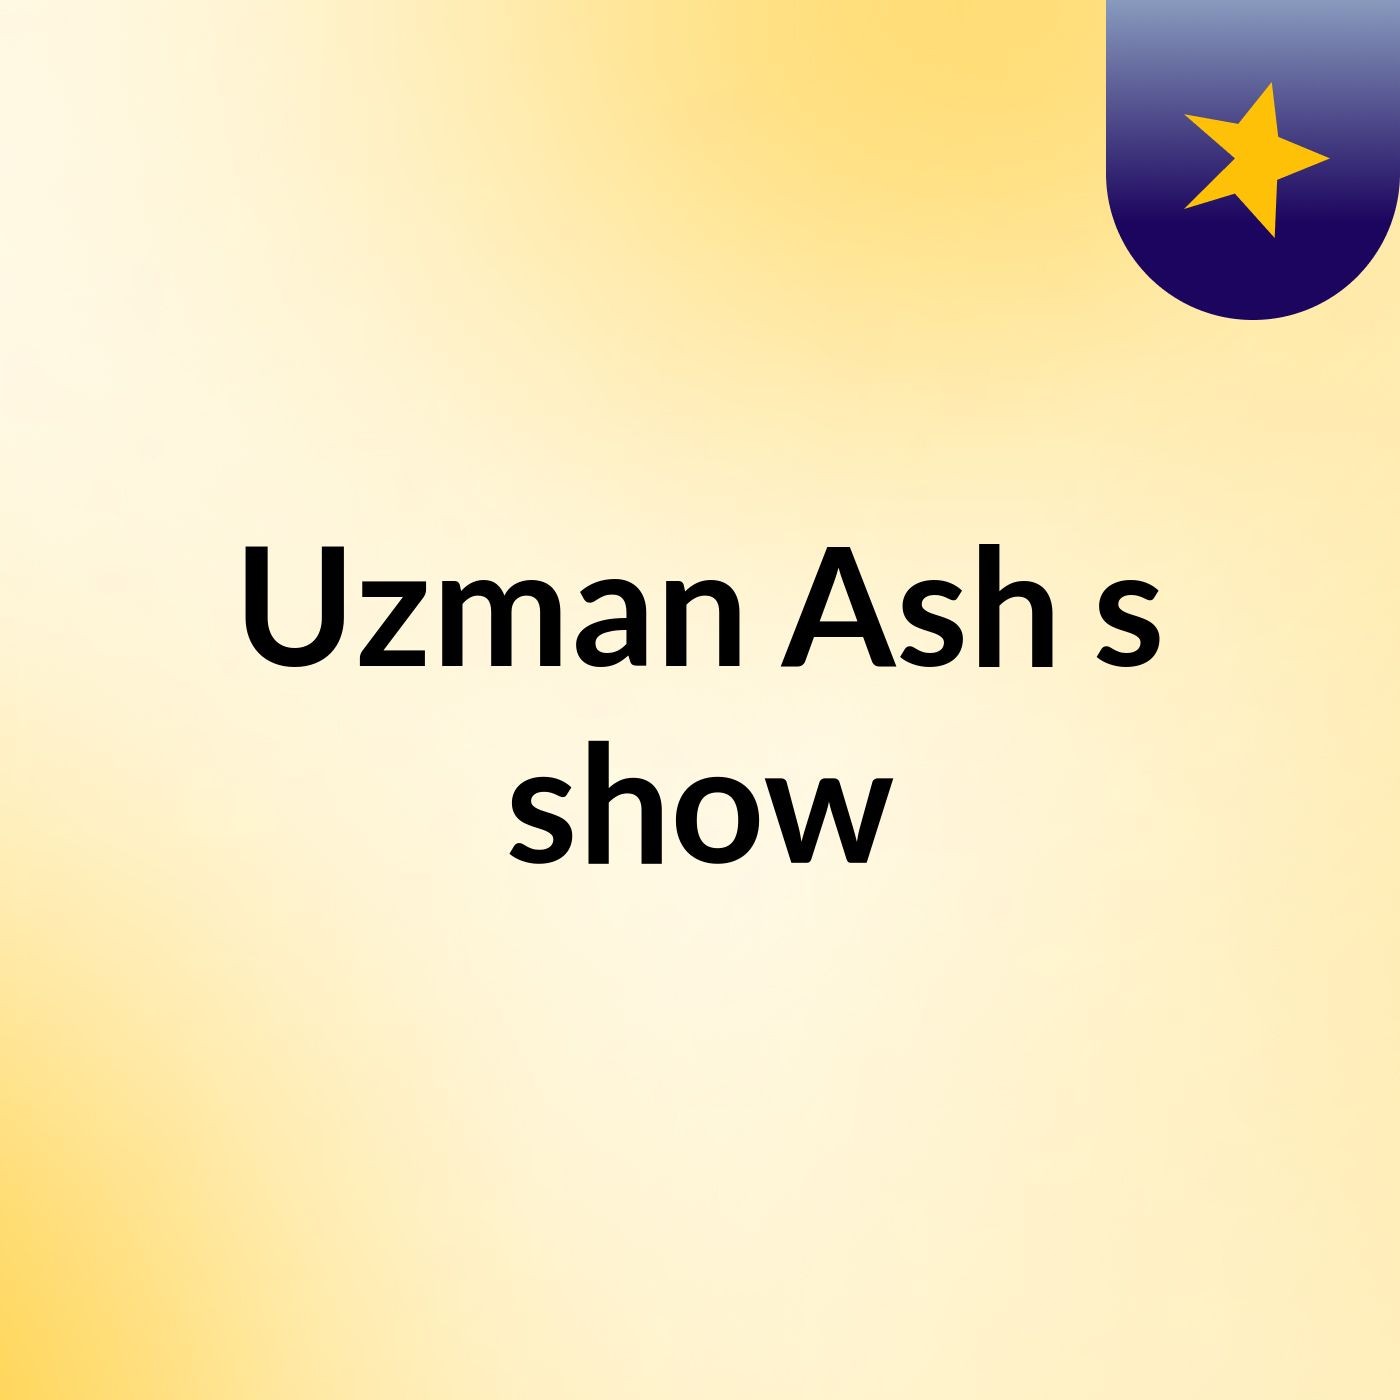 Uzman Ash's show